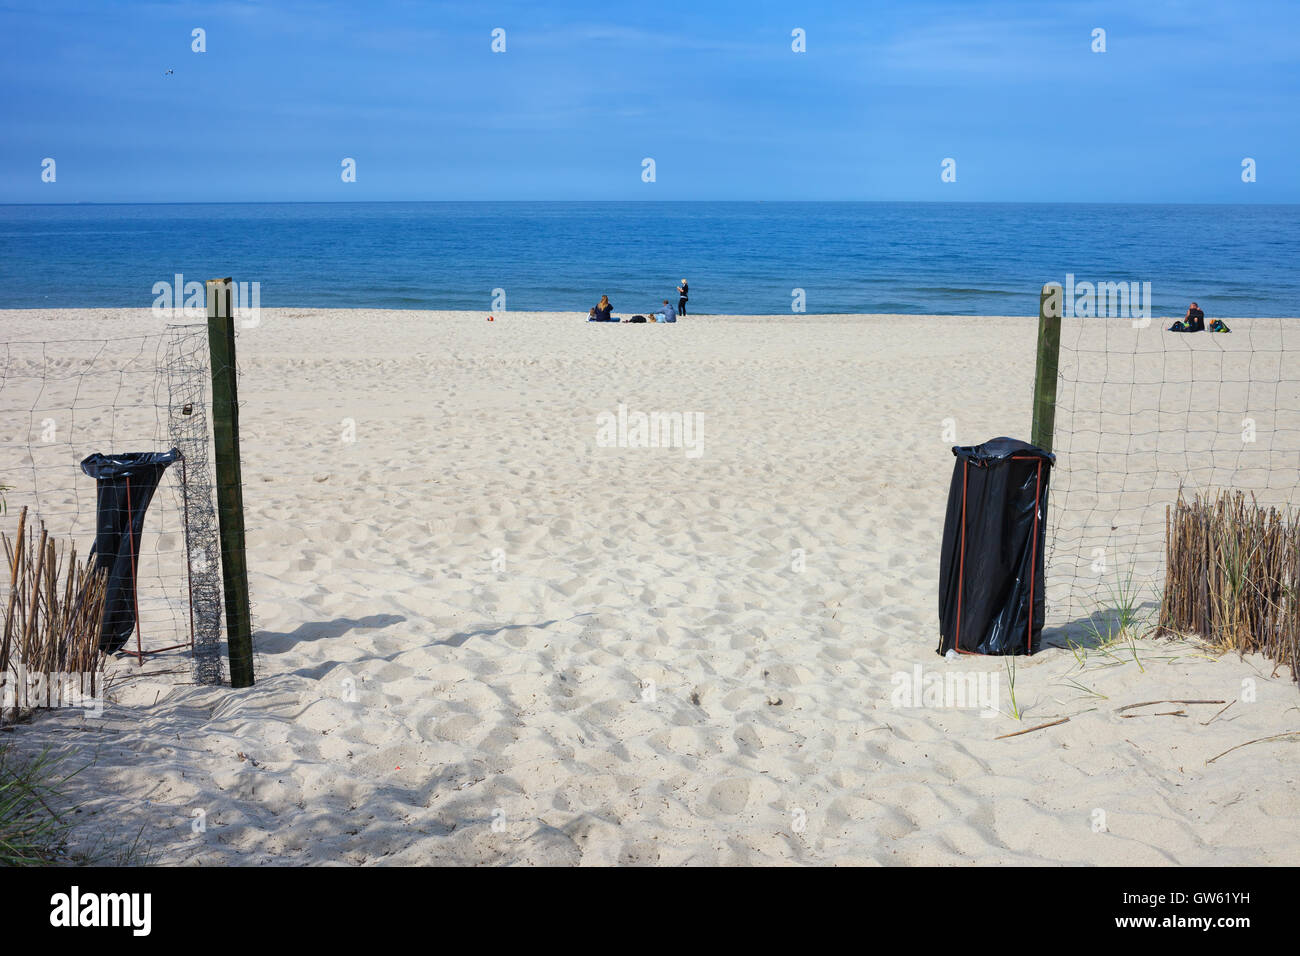 Ingresso alla spiaggia di sabbia bianca a Wladyslawowo, Polonia, cittadina al Mar Baltico Foto Stock